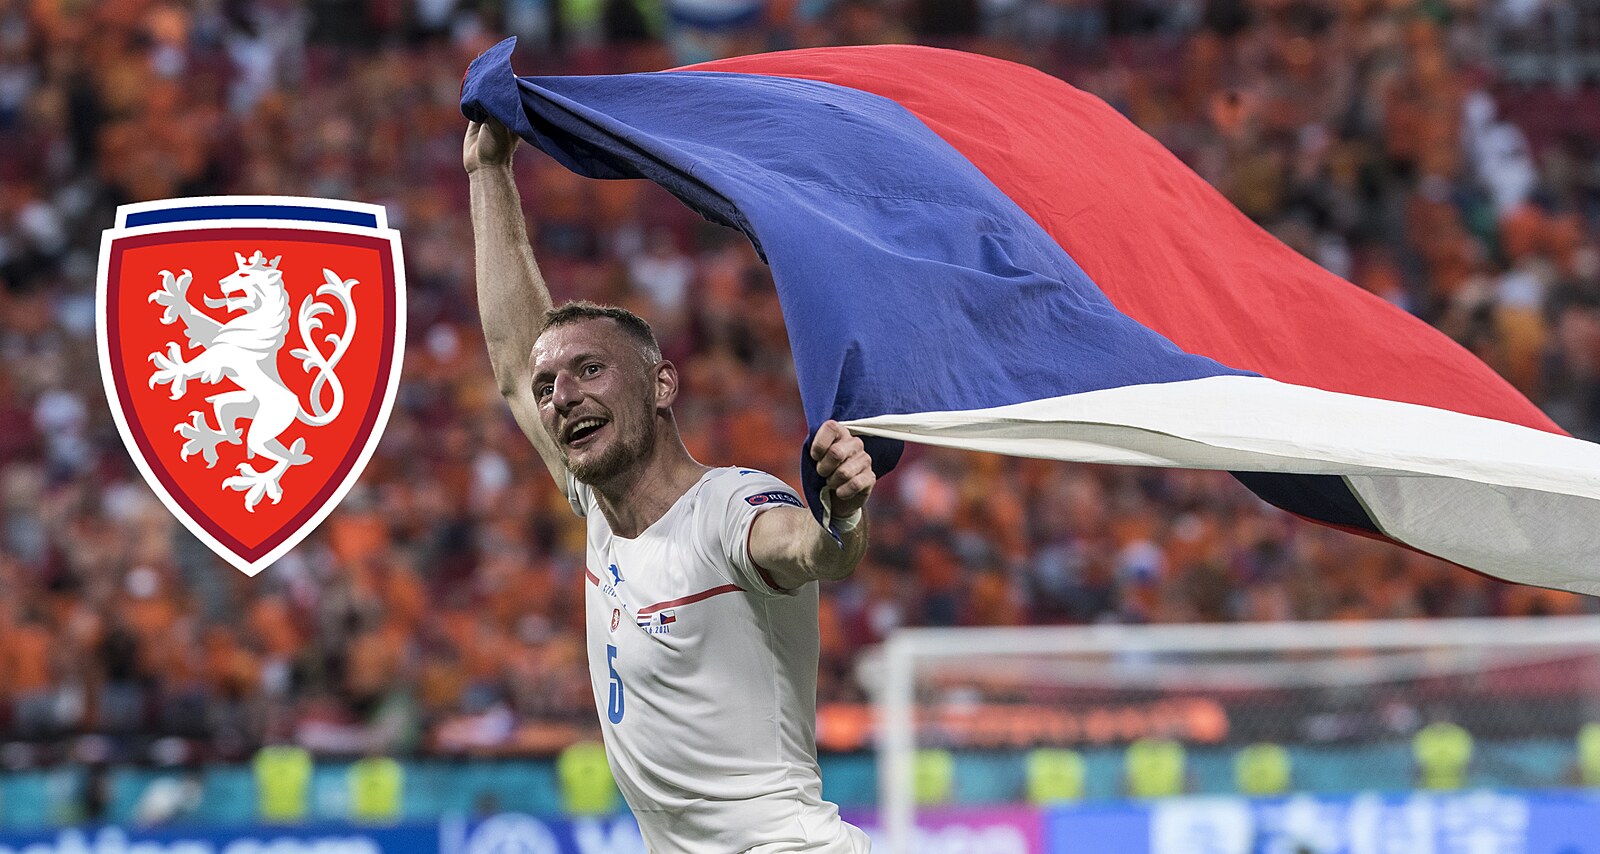 Fotbalová Slavia Praha změnila logo a vizuální identitu